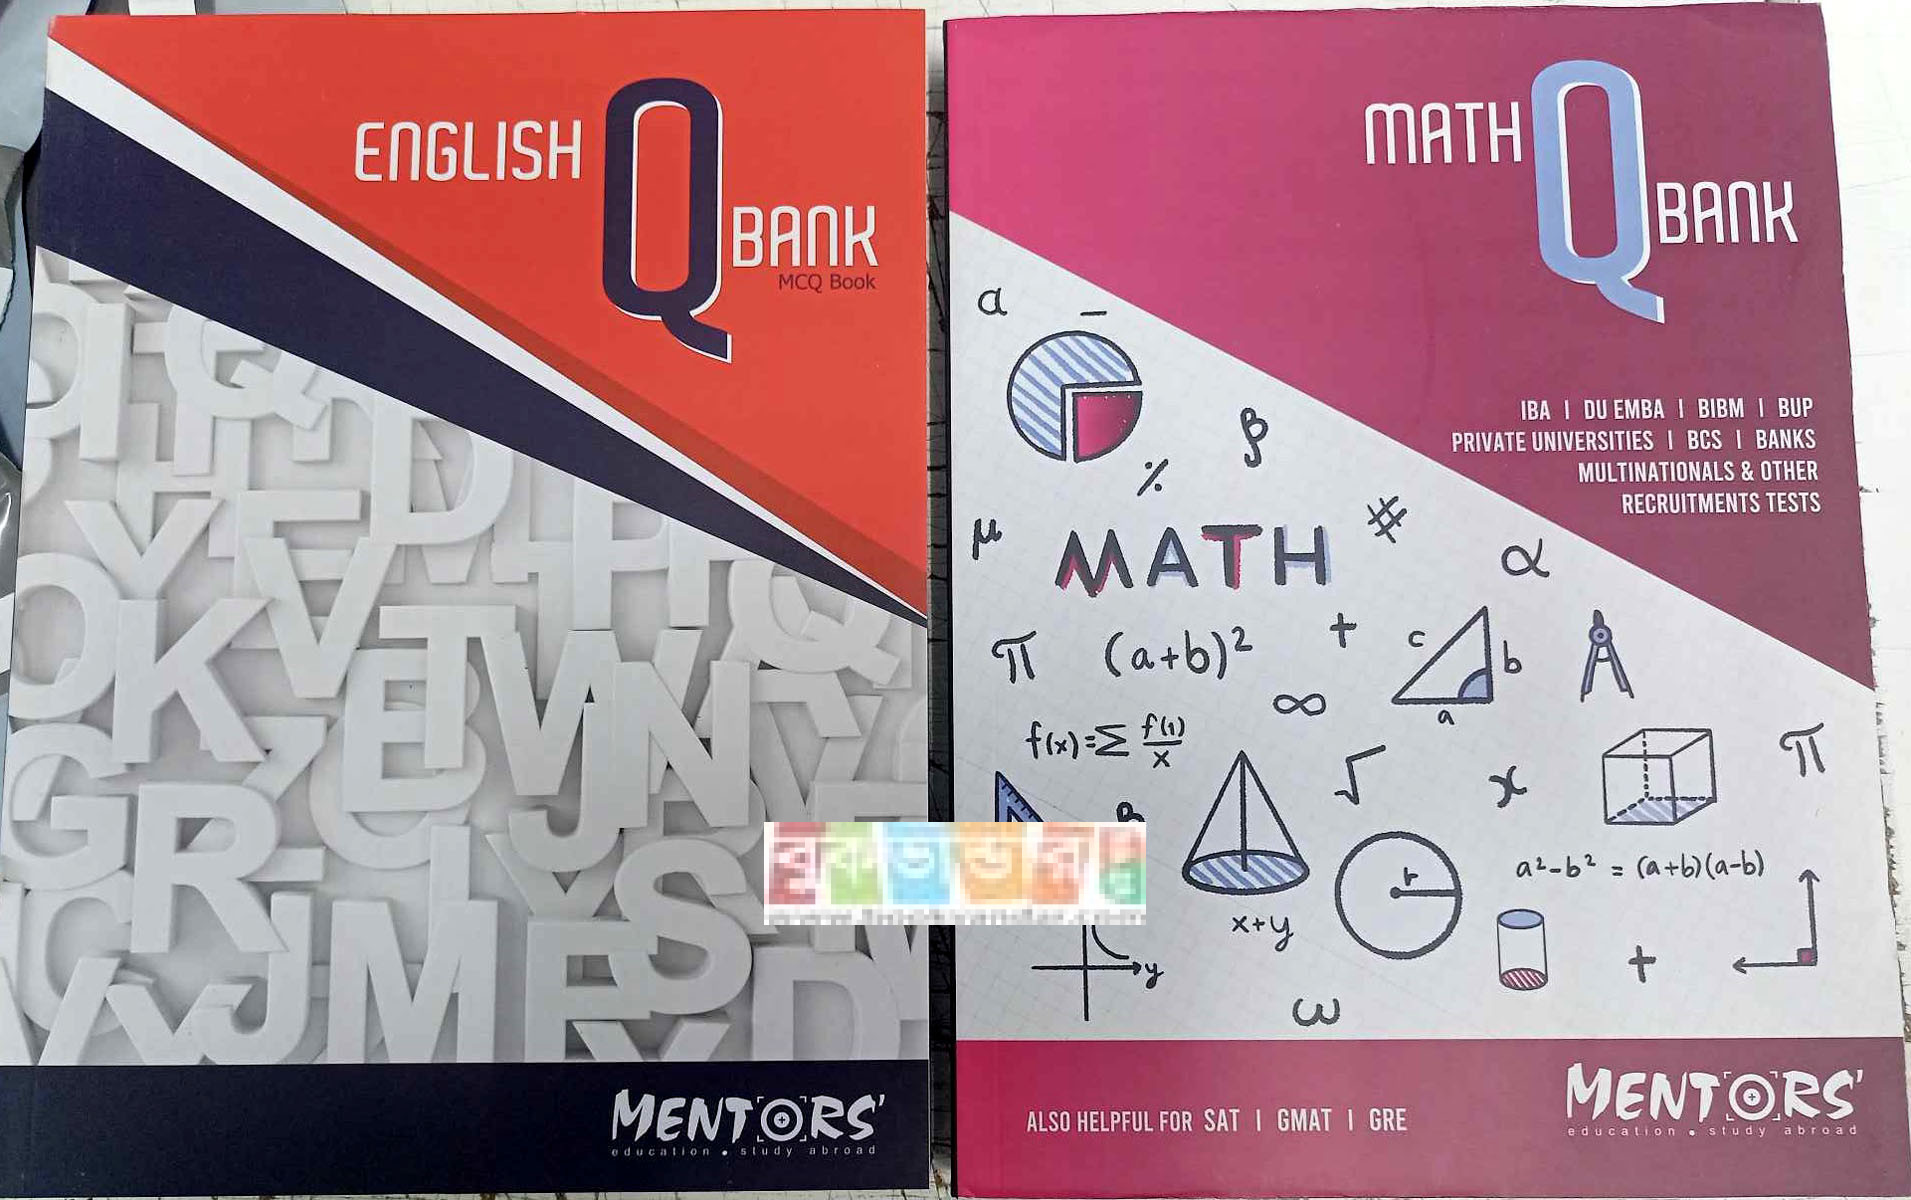 Mentors Mentors Math Q Bank and English Q Bank (2 books)